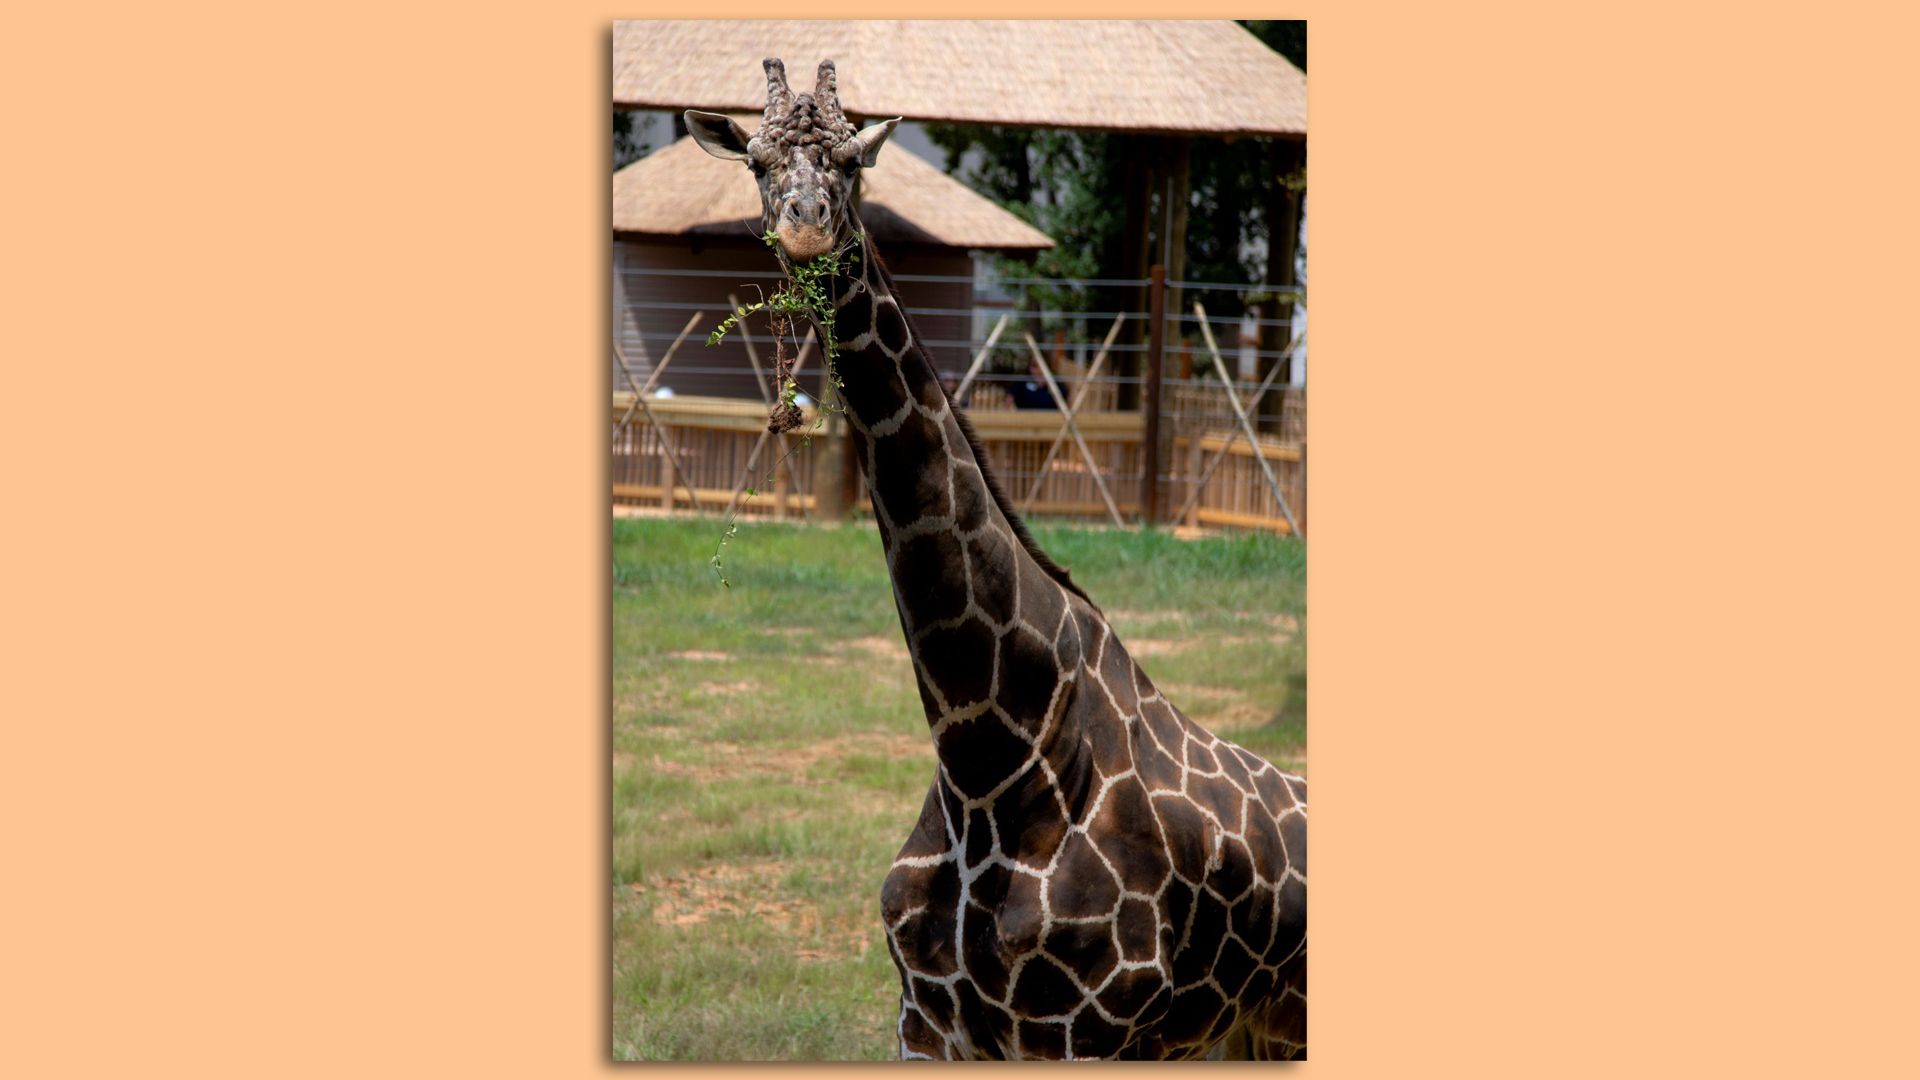 Abu the giraffe